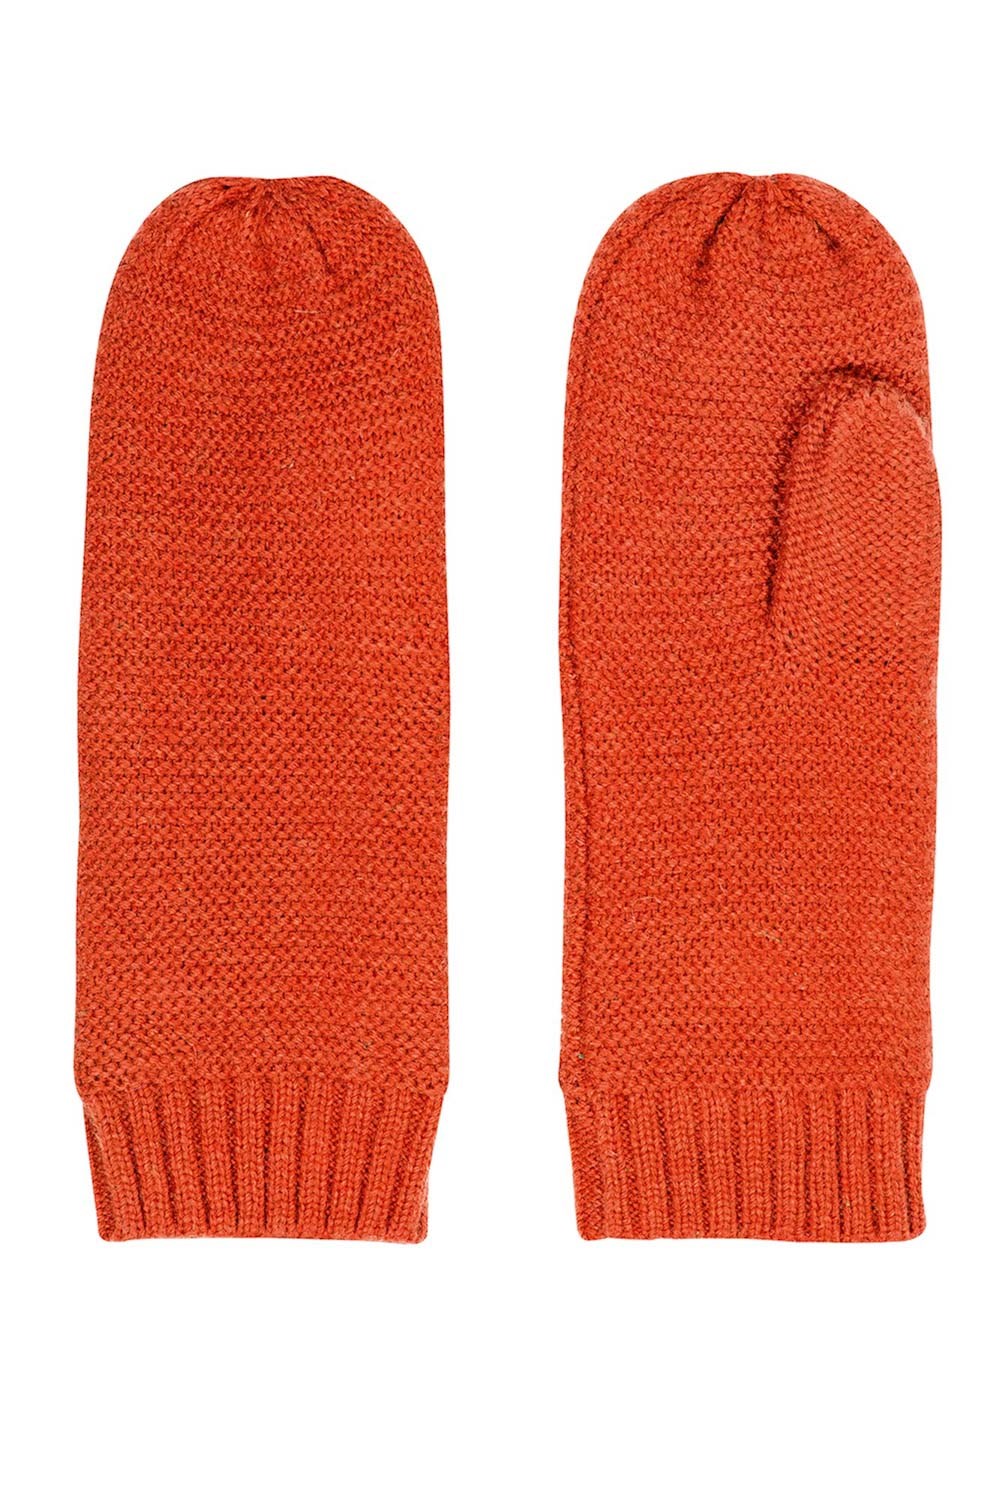 Gloves Spicy